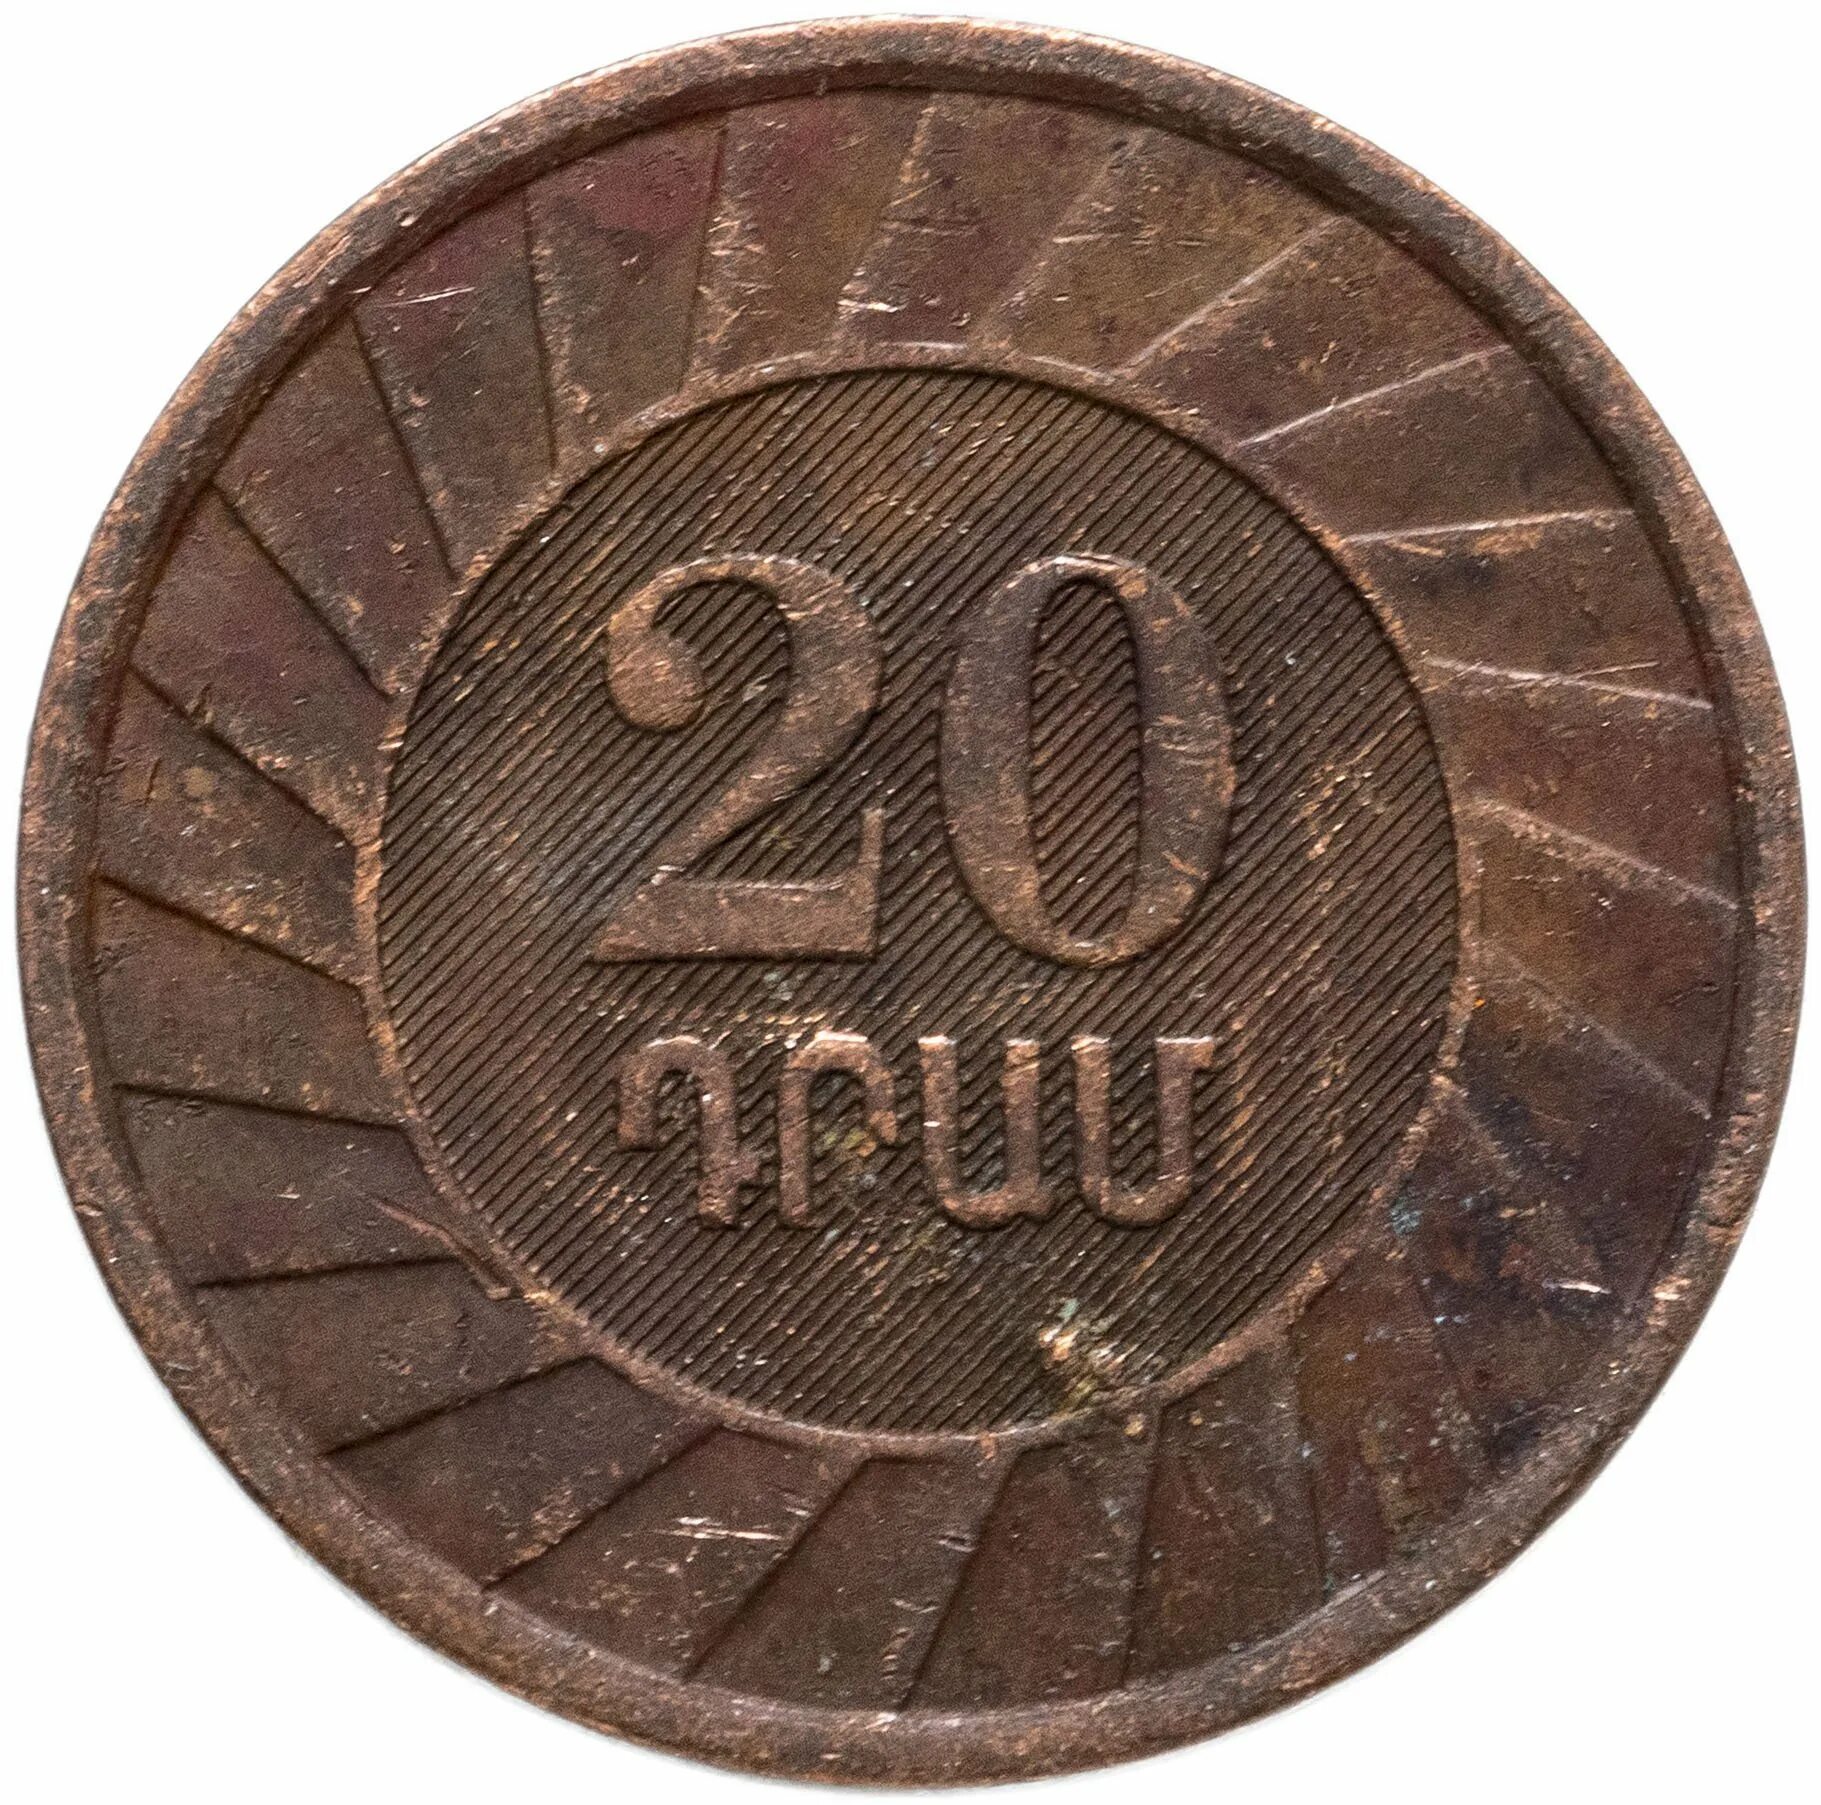 20 Драмов 2003 Армения. Монета 20 драм 2003. Армянская монета 20 драм. Монета номиналом 20 драмов 2003 год. 500000 драм в рублях